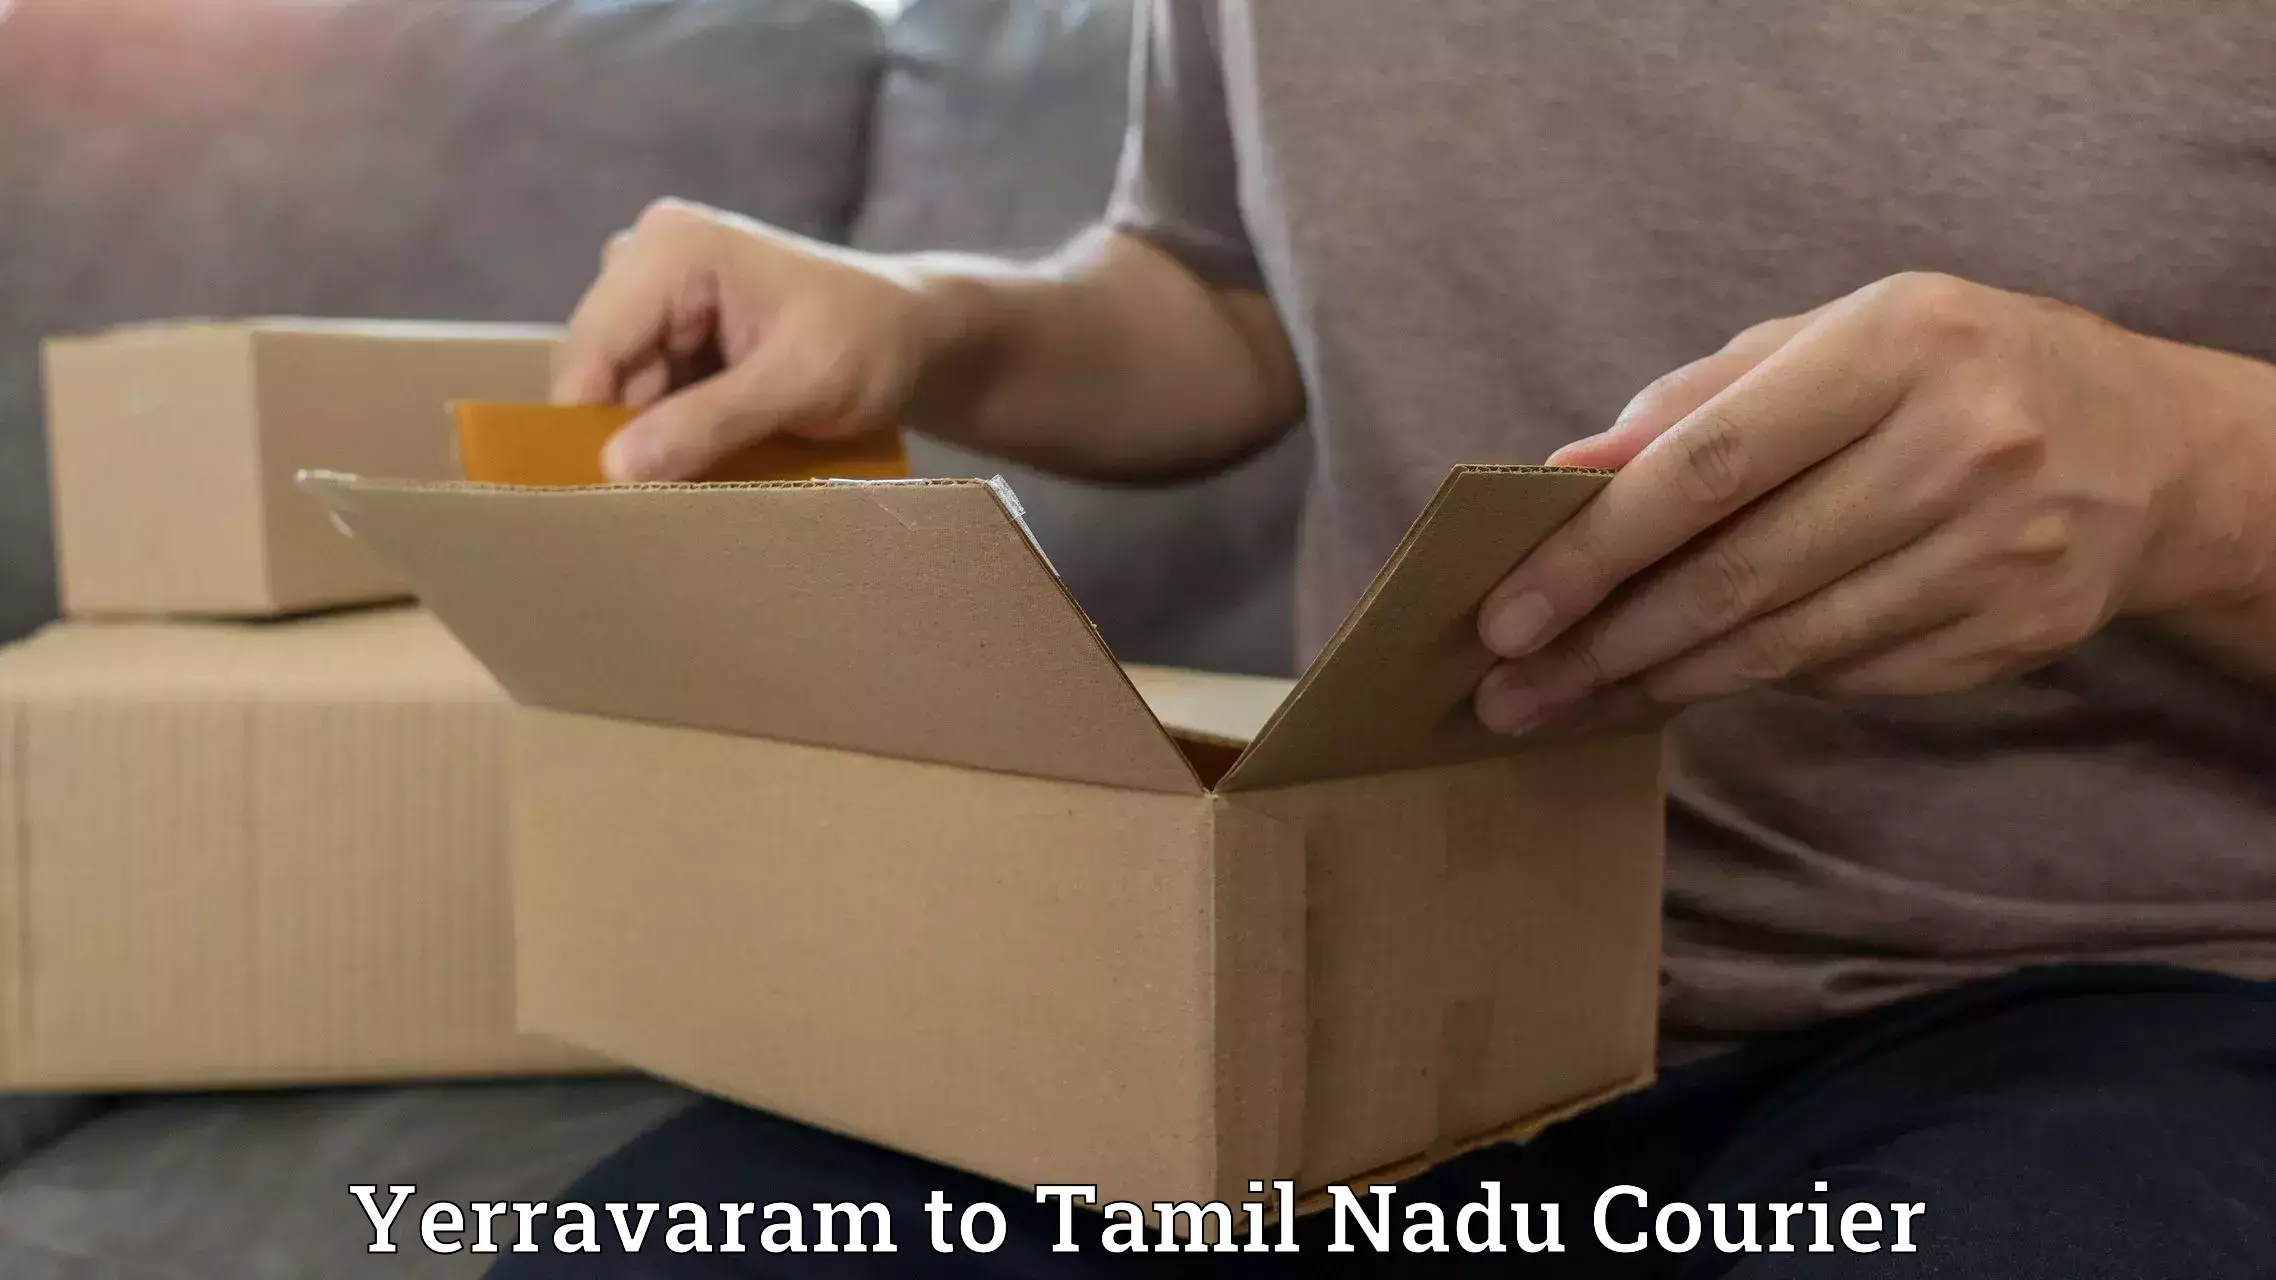 Courier dispatch services Yerravaram to Tamil Nadu